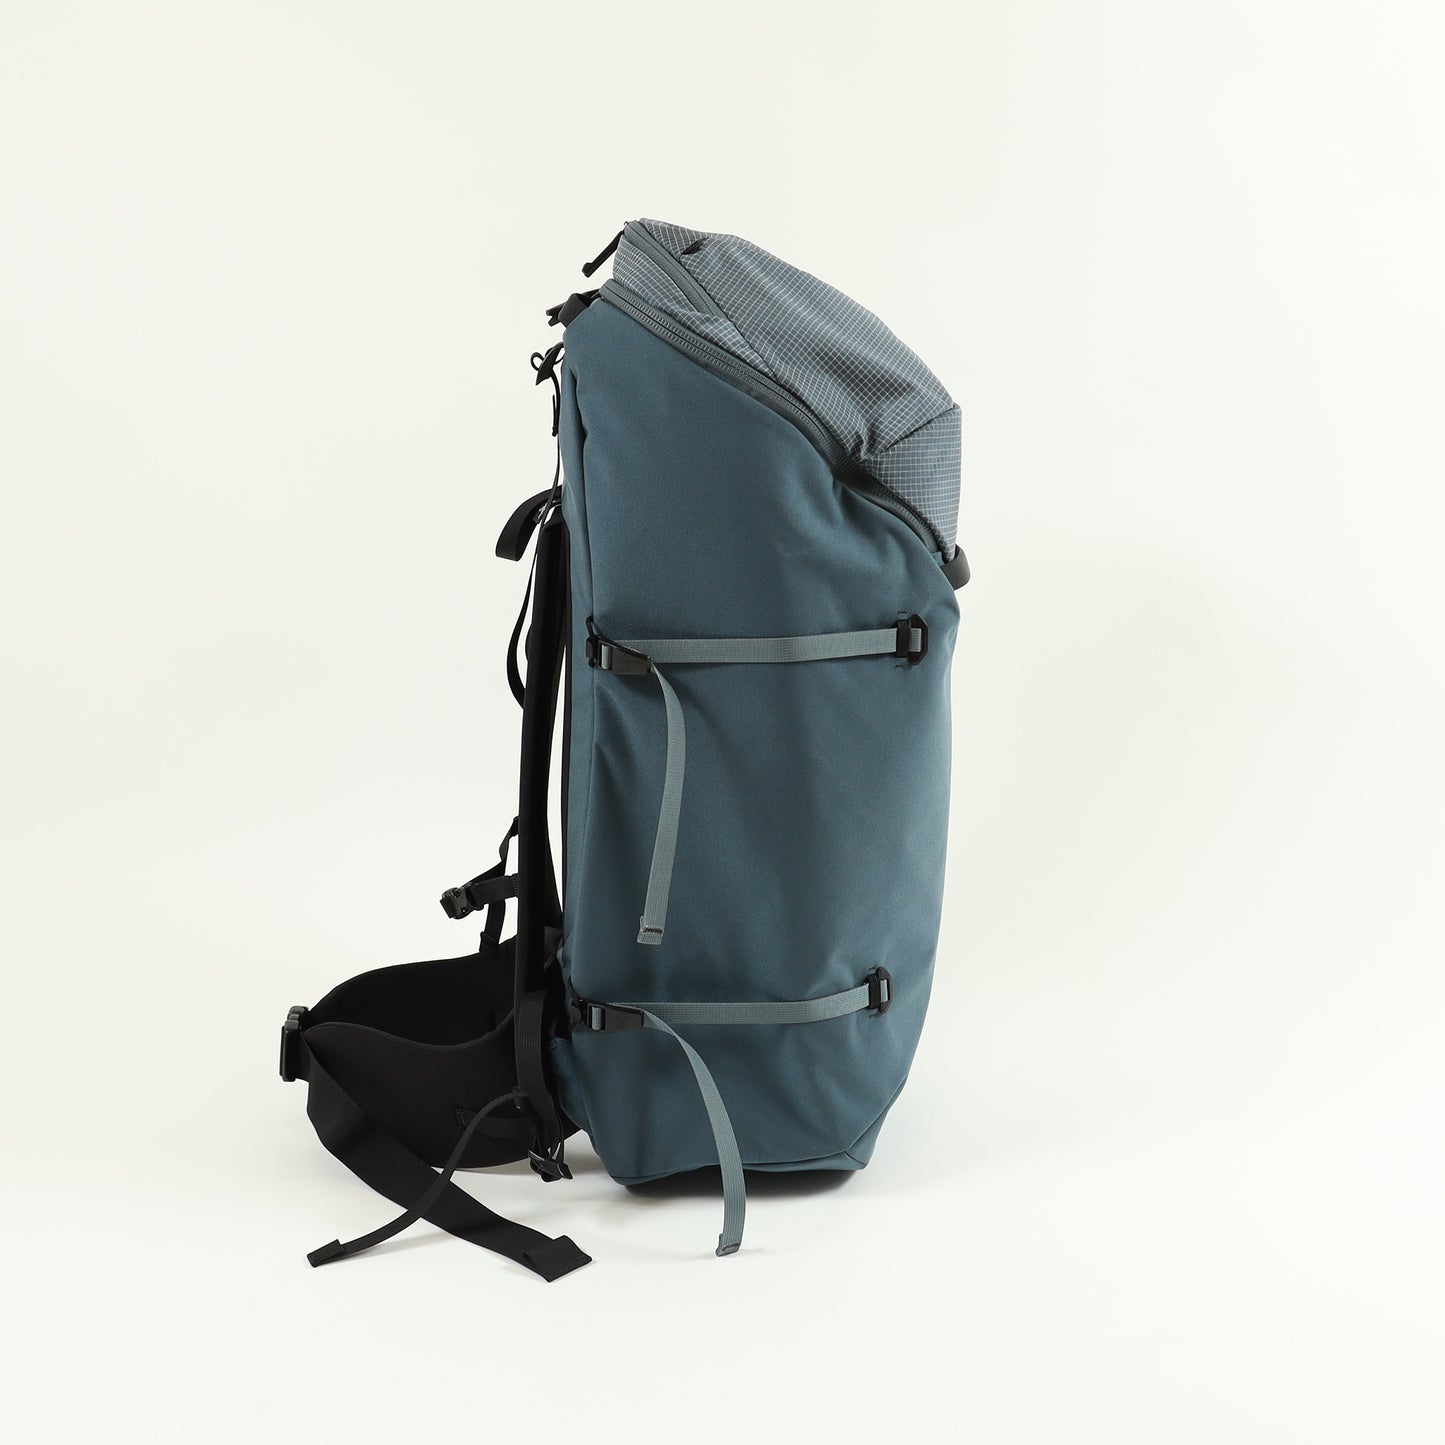 【Arc'teryx】Konseal 55 Backpack